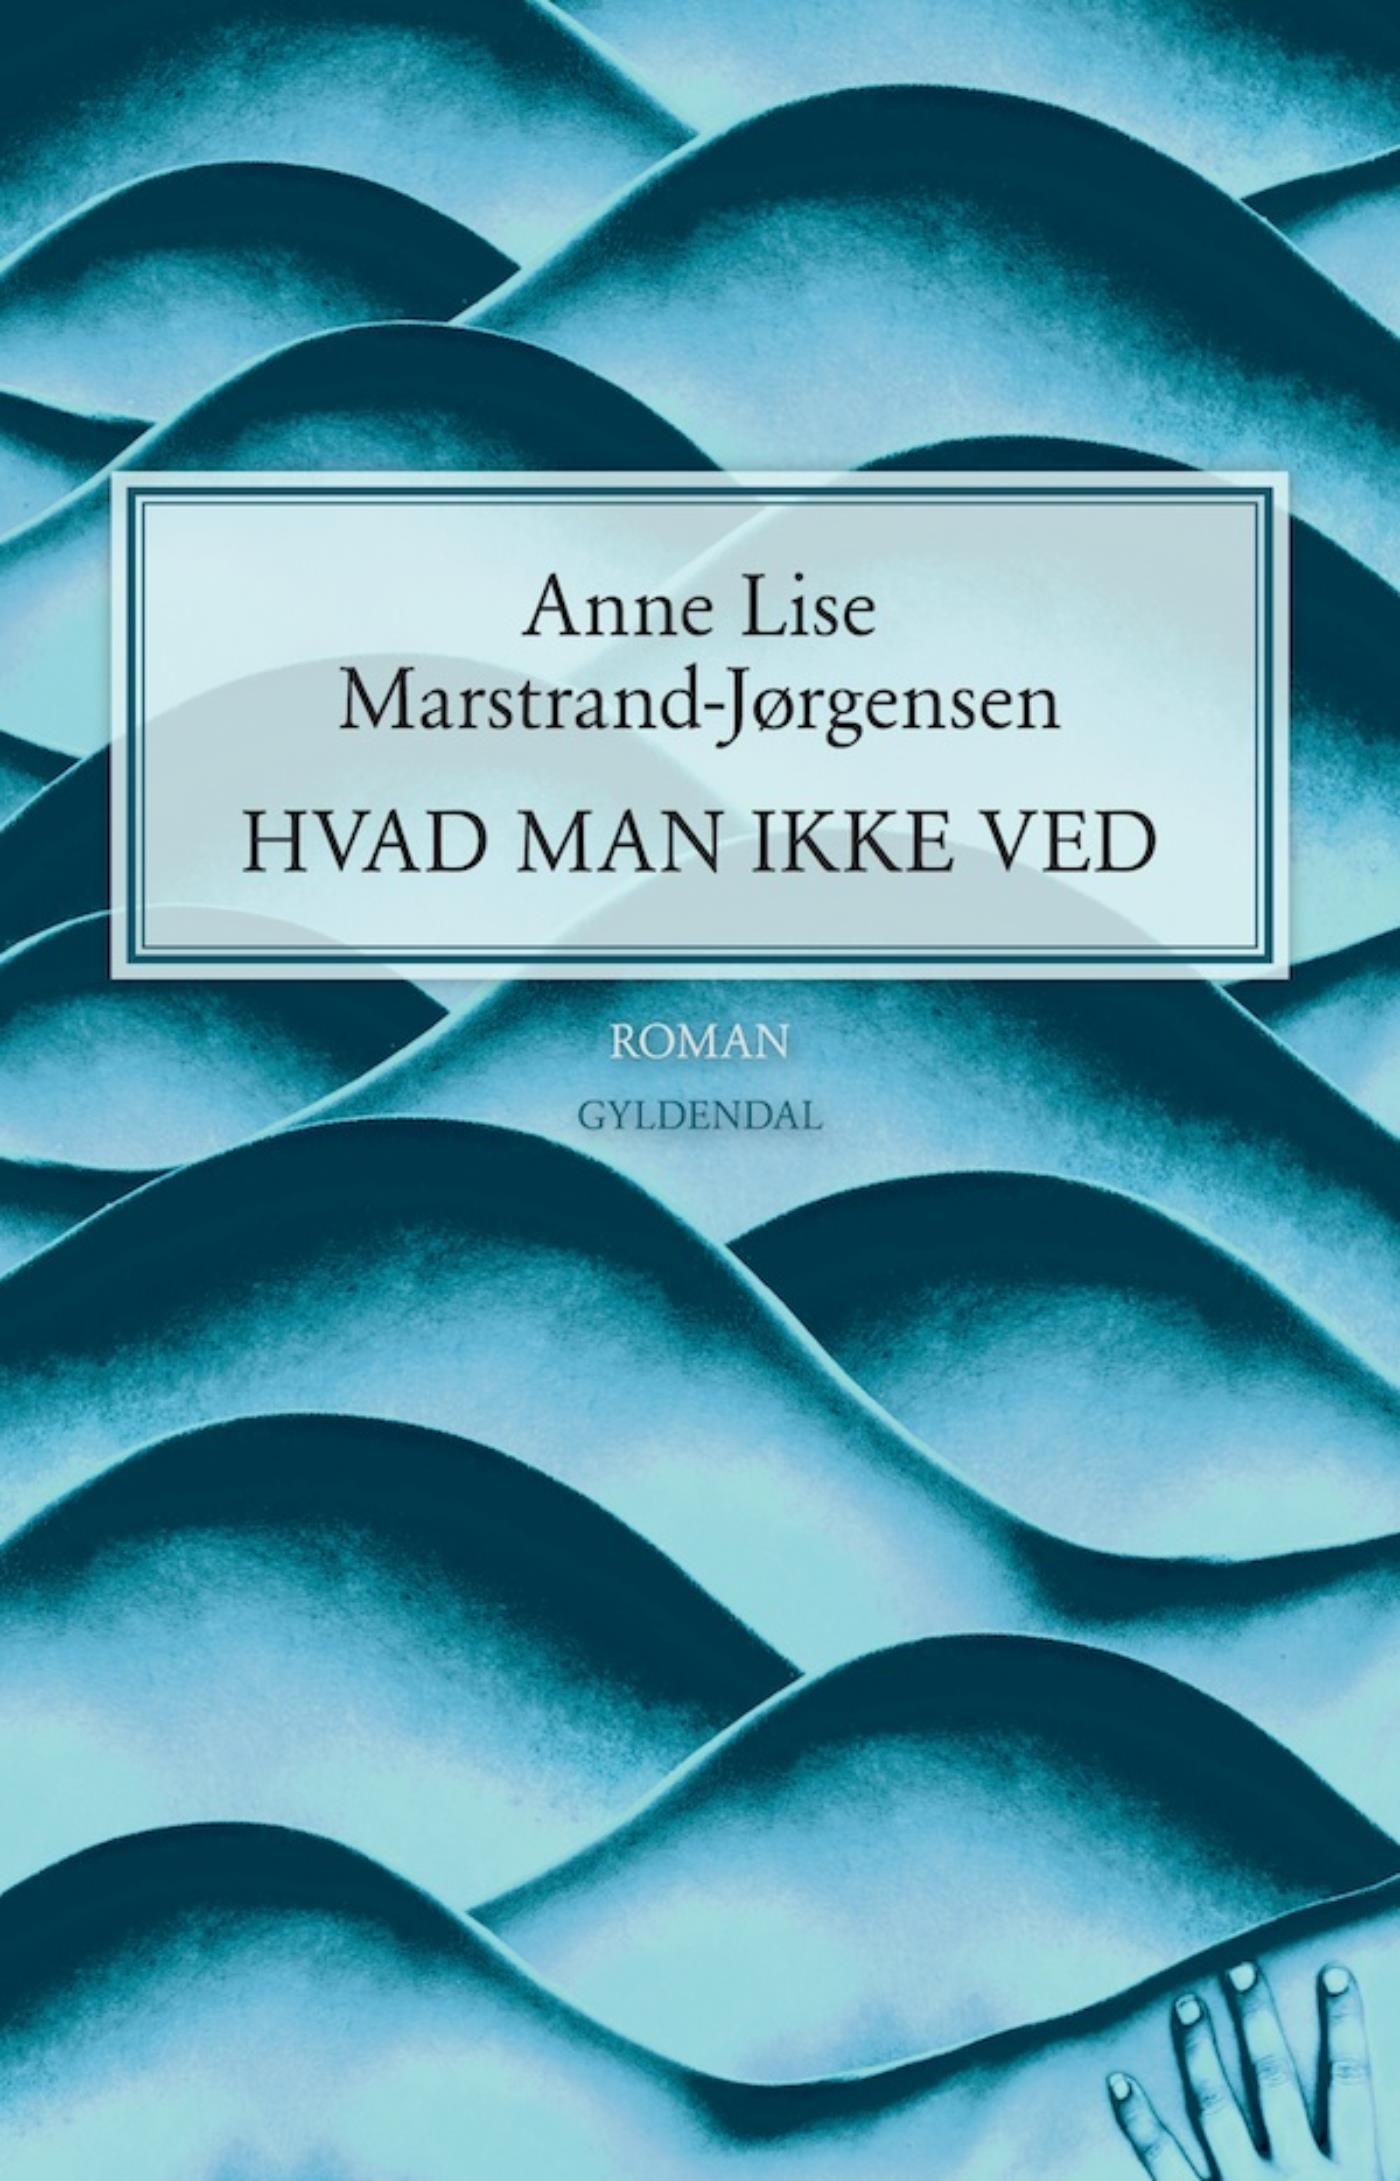 Hvad man ikke ved, eBook by Anne Lise Marstrand-Jørgensen